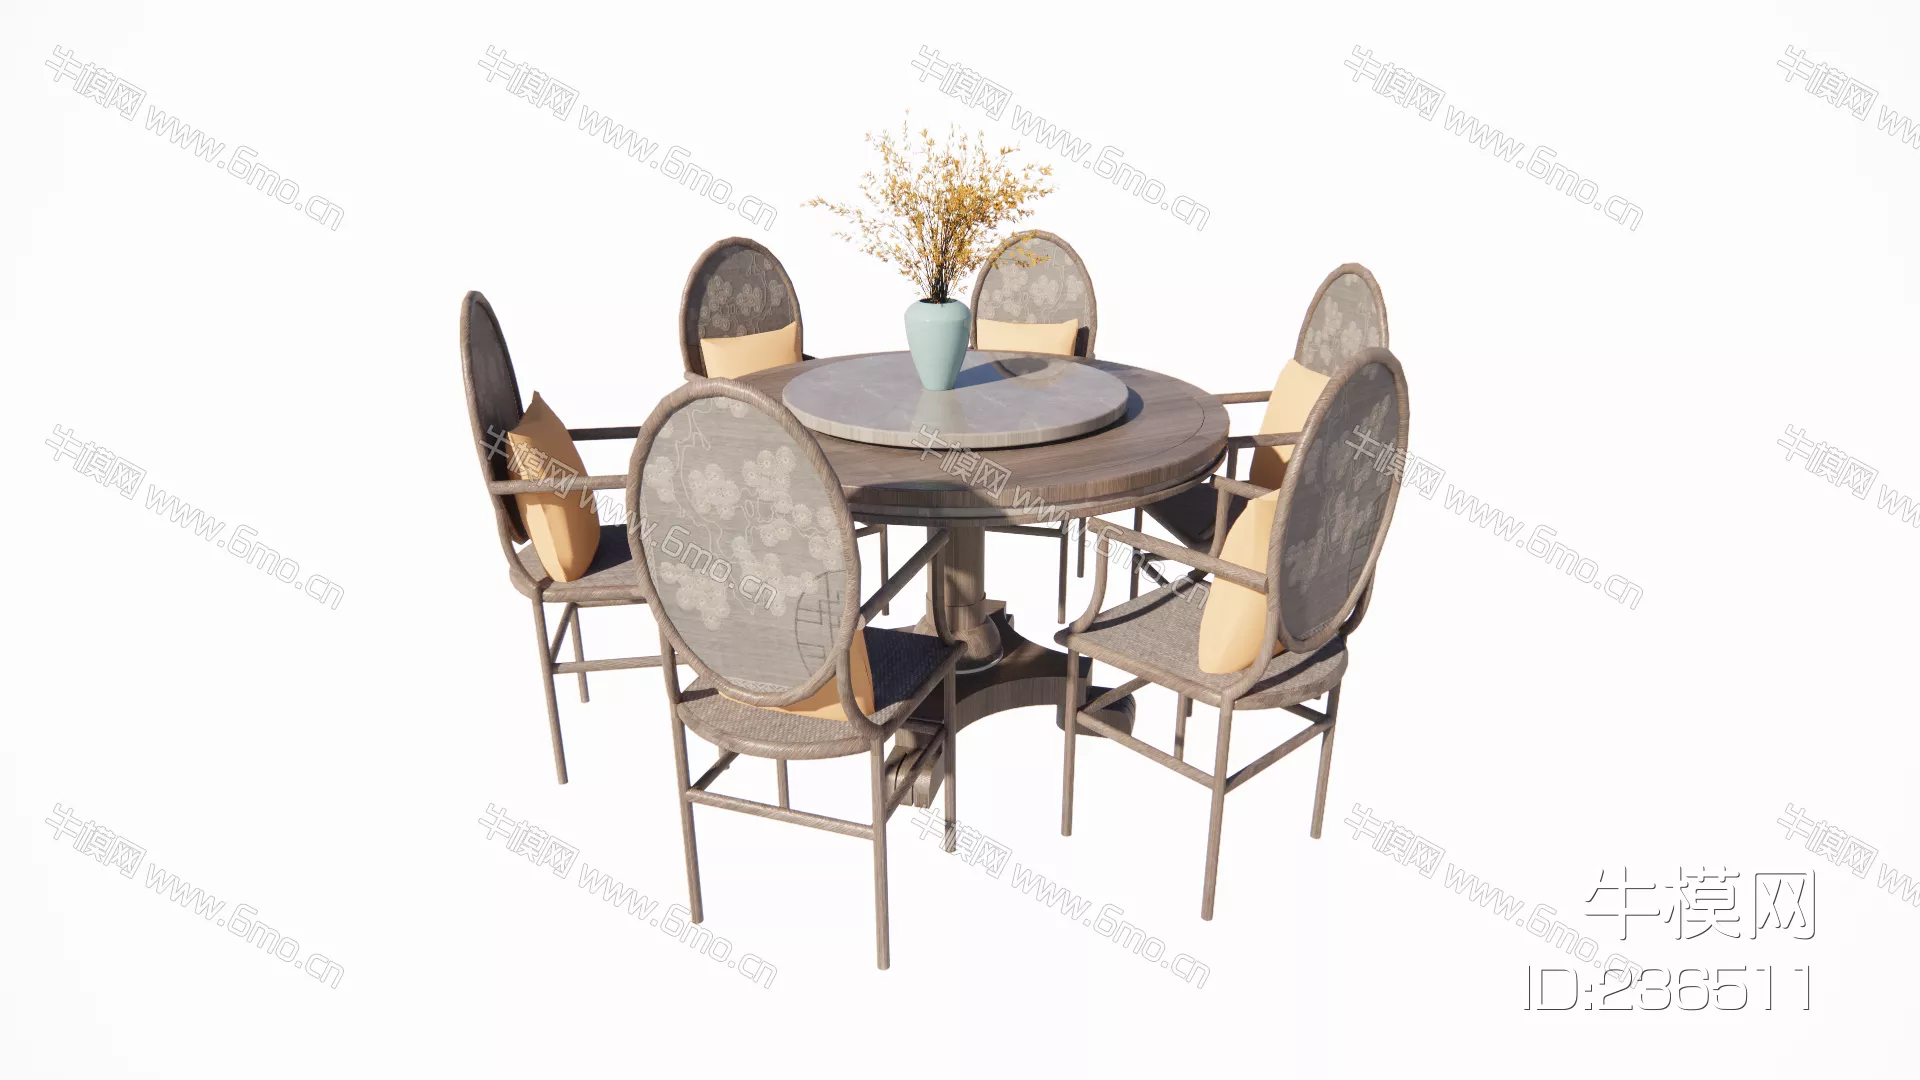 MODERN DINING TABLE SET - SKETCHUP 3D MODEL - ENSCAPE - 236511